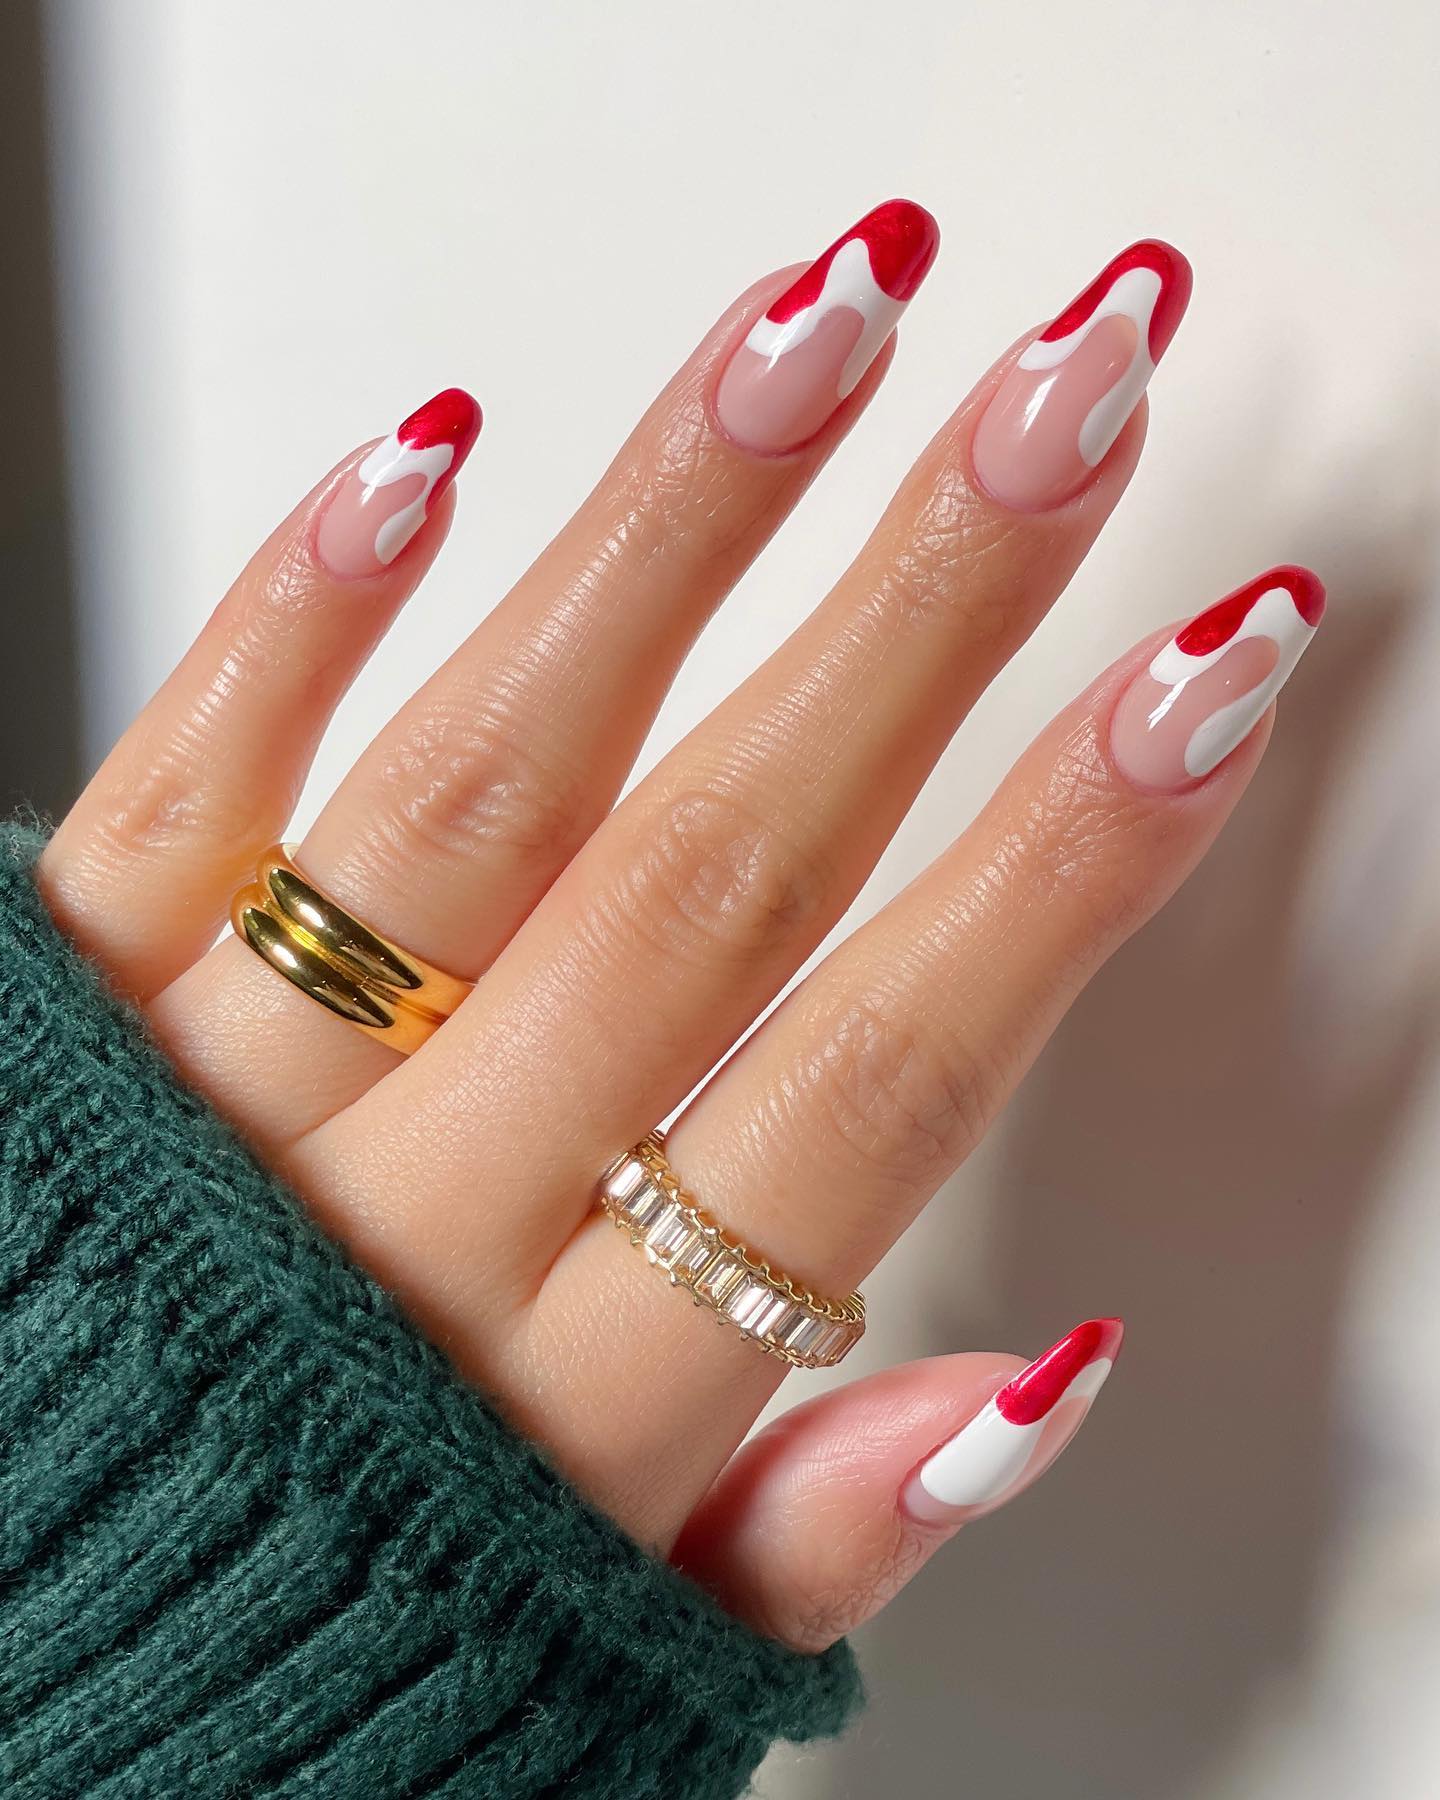 Rode en witte Franse nageltips